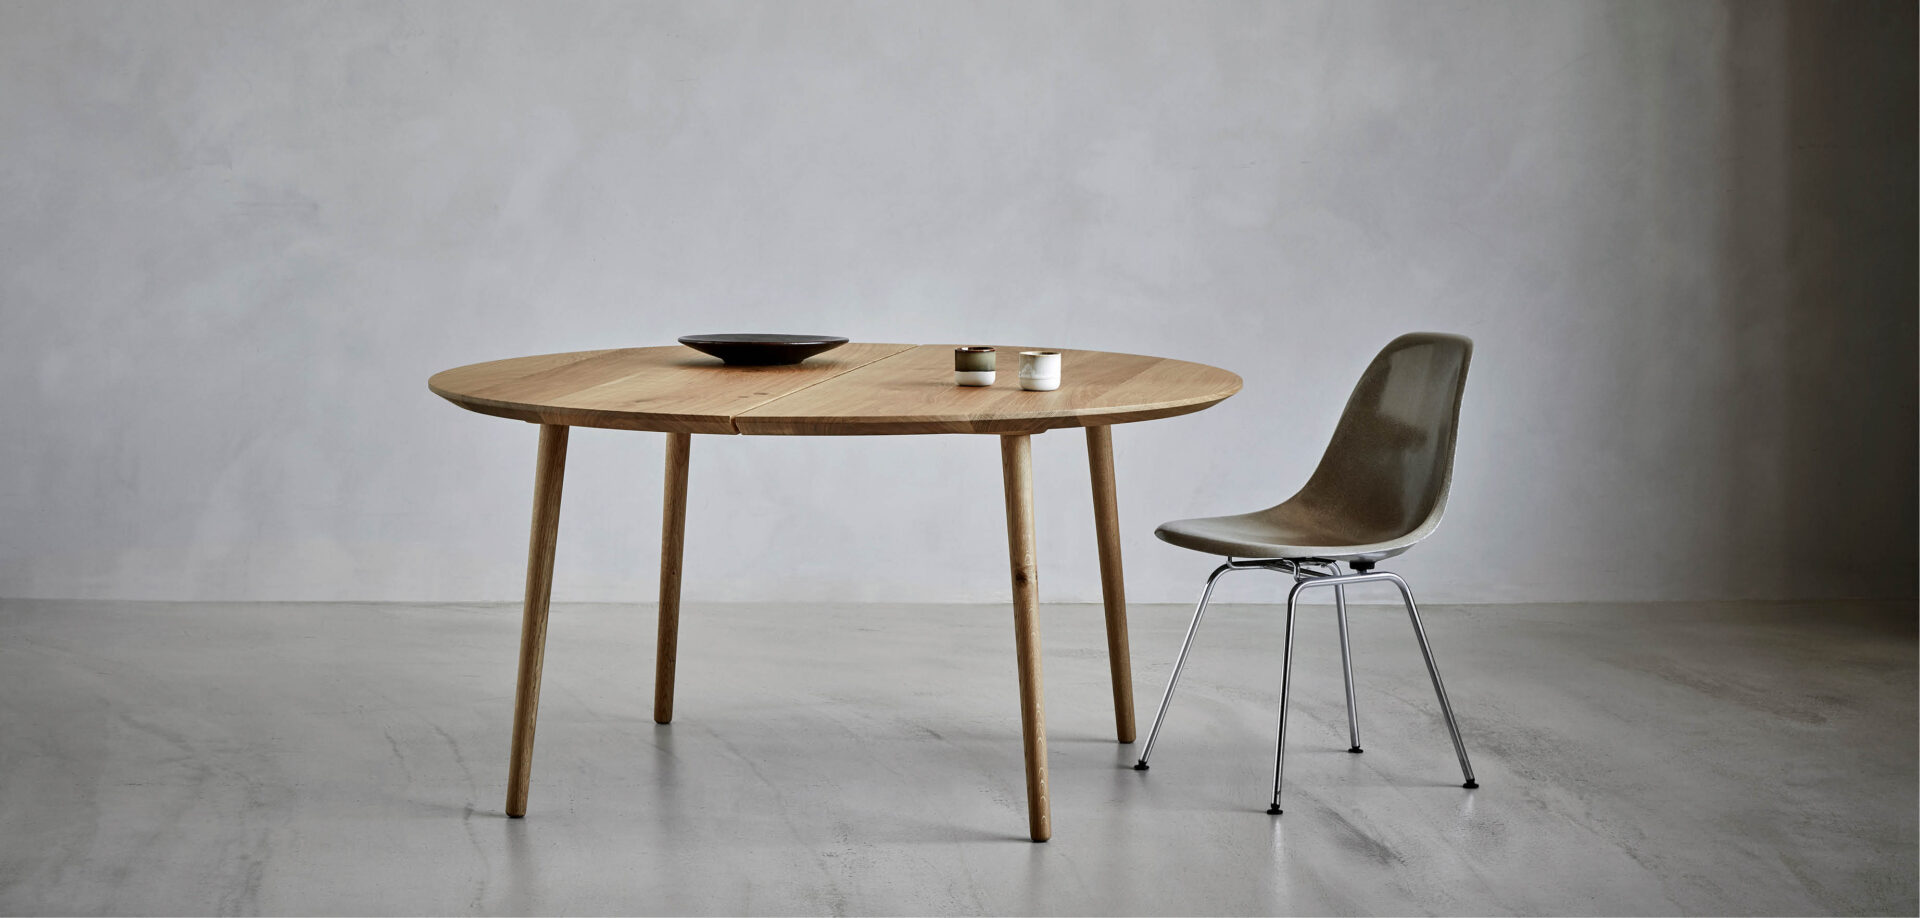 Nicolaj Bo dansk producerede snedker møbler